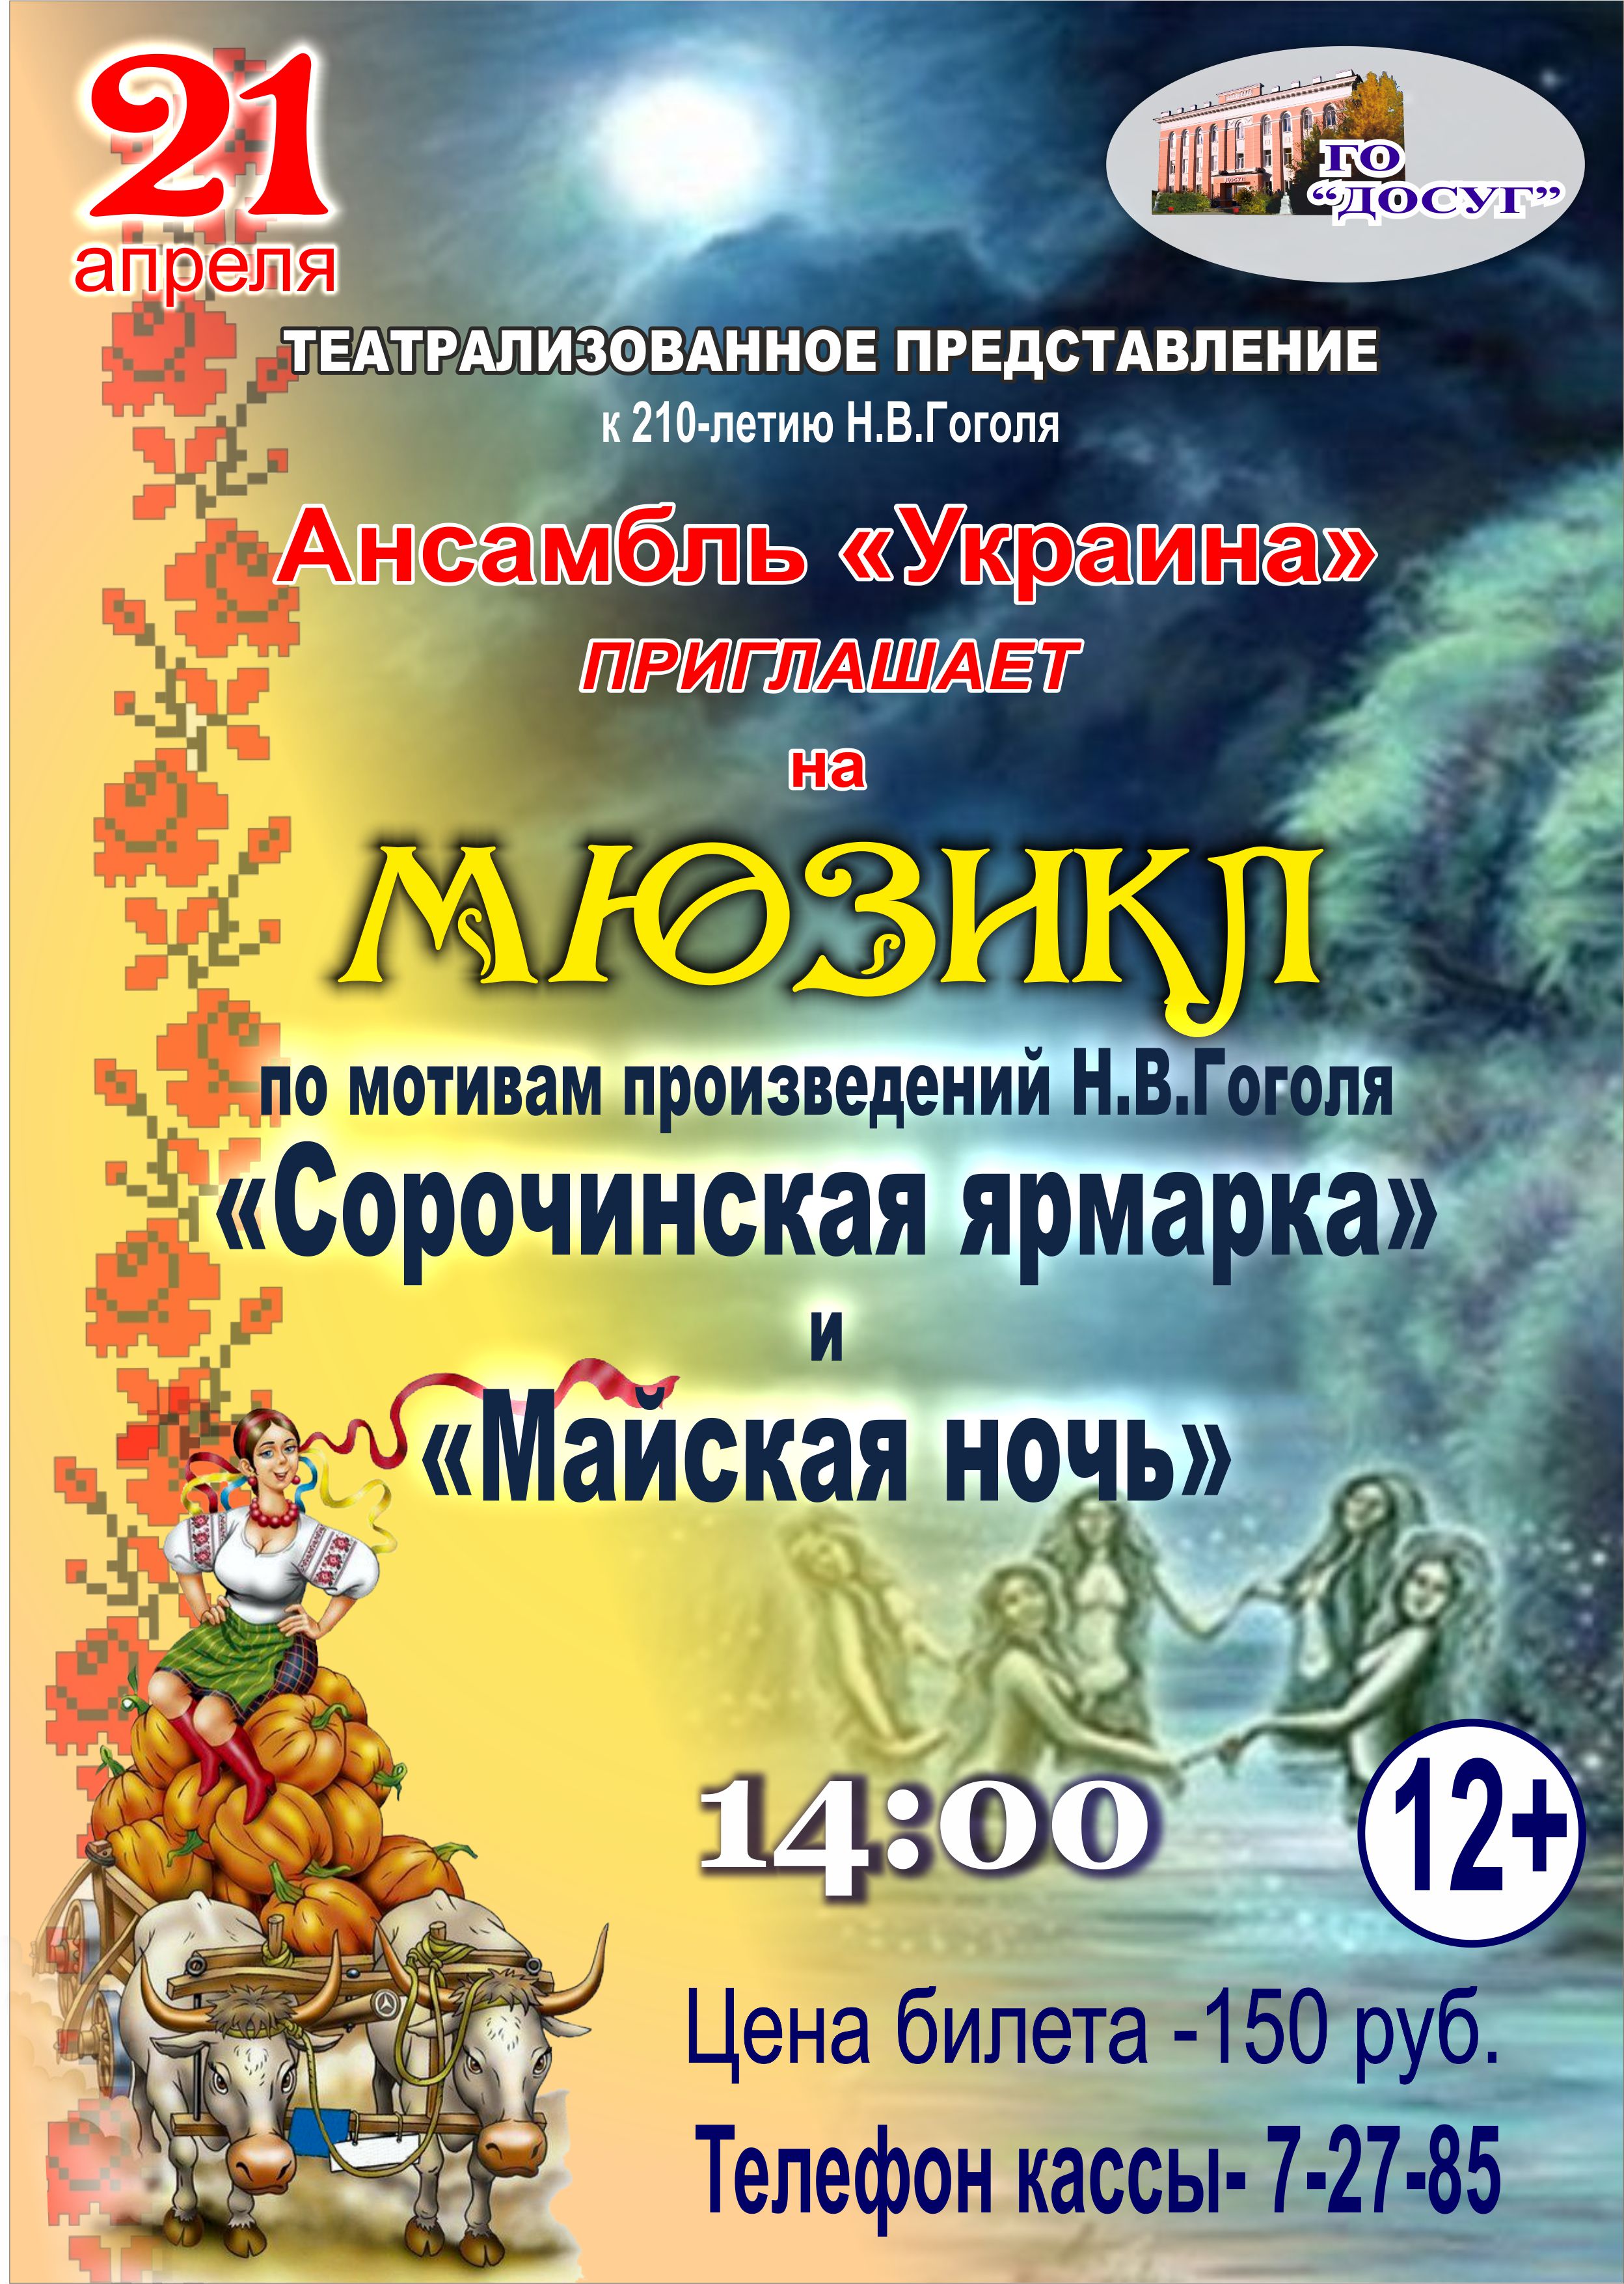 —- 21 апреля в 14.00  Театрализованное представление к 210- летию Н. В. Гоголя. Ансамбль “Украина” приглашает на мюзикл “Сорочинская ярмарка” и “Майская ночь” цена билета: 150 руб. возрастной ценз 12+